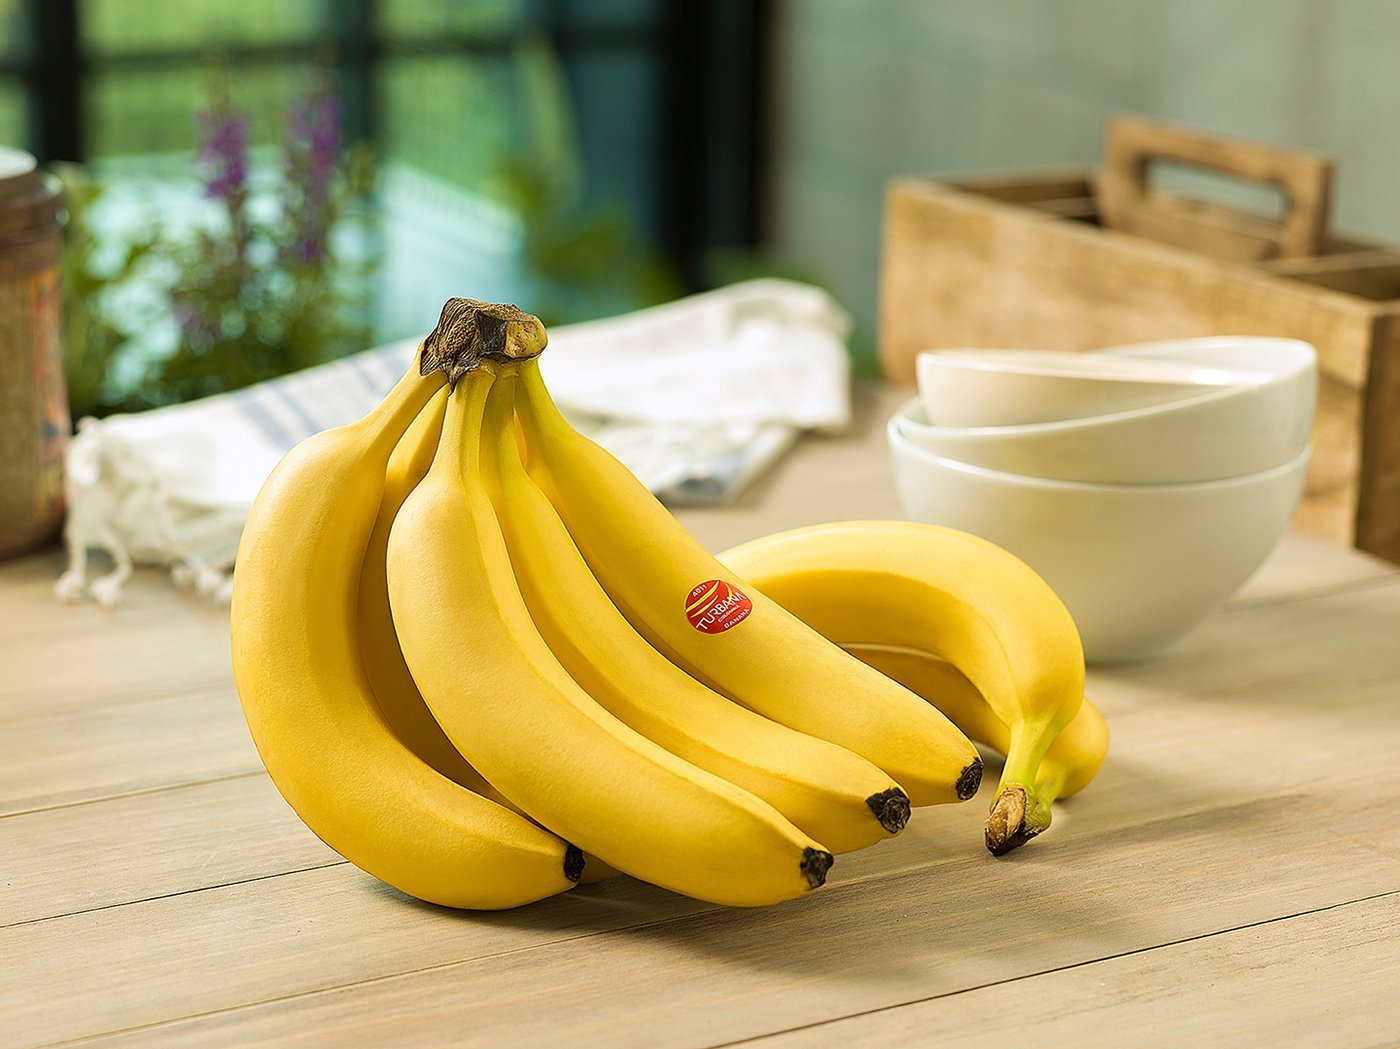 Картинка банан. Банан Кавендиш. Банан сорт Кавендиш. Бананы Кавендиш (Cavendish). Банан гигантский Кавендиш.